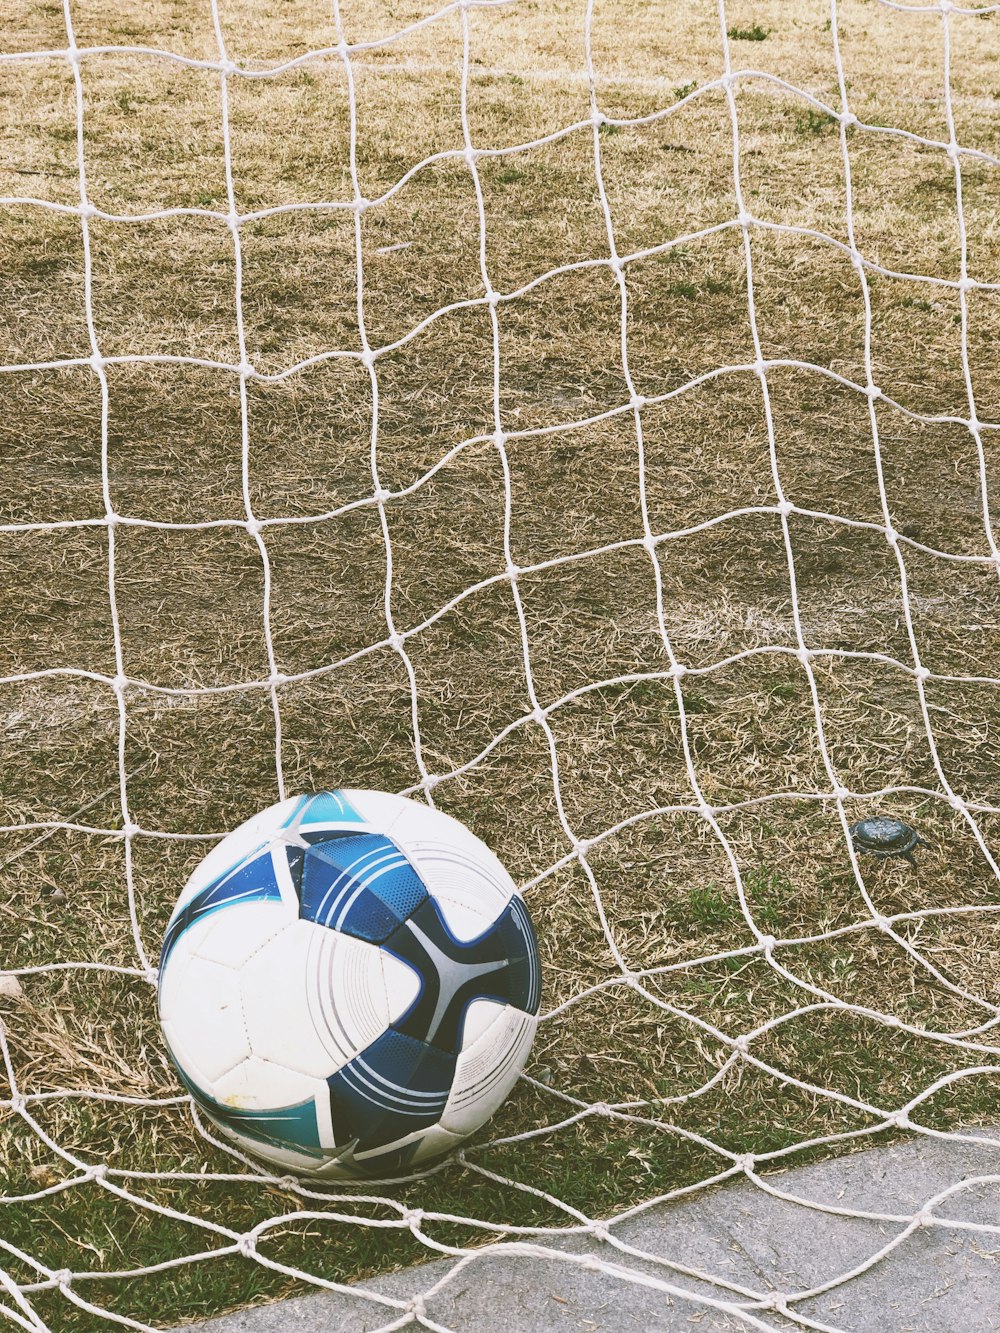 bola de futebol branca e azul no chão dentro do gol